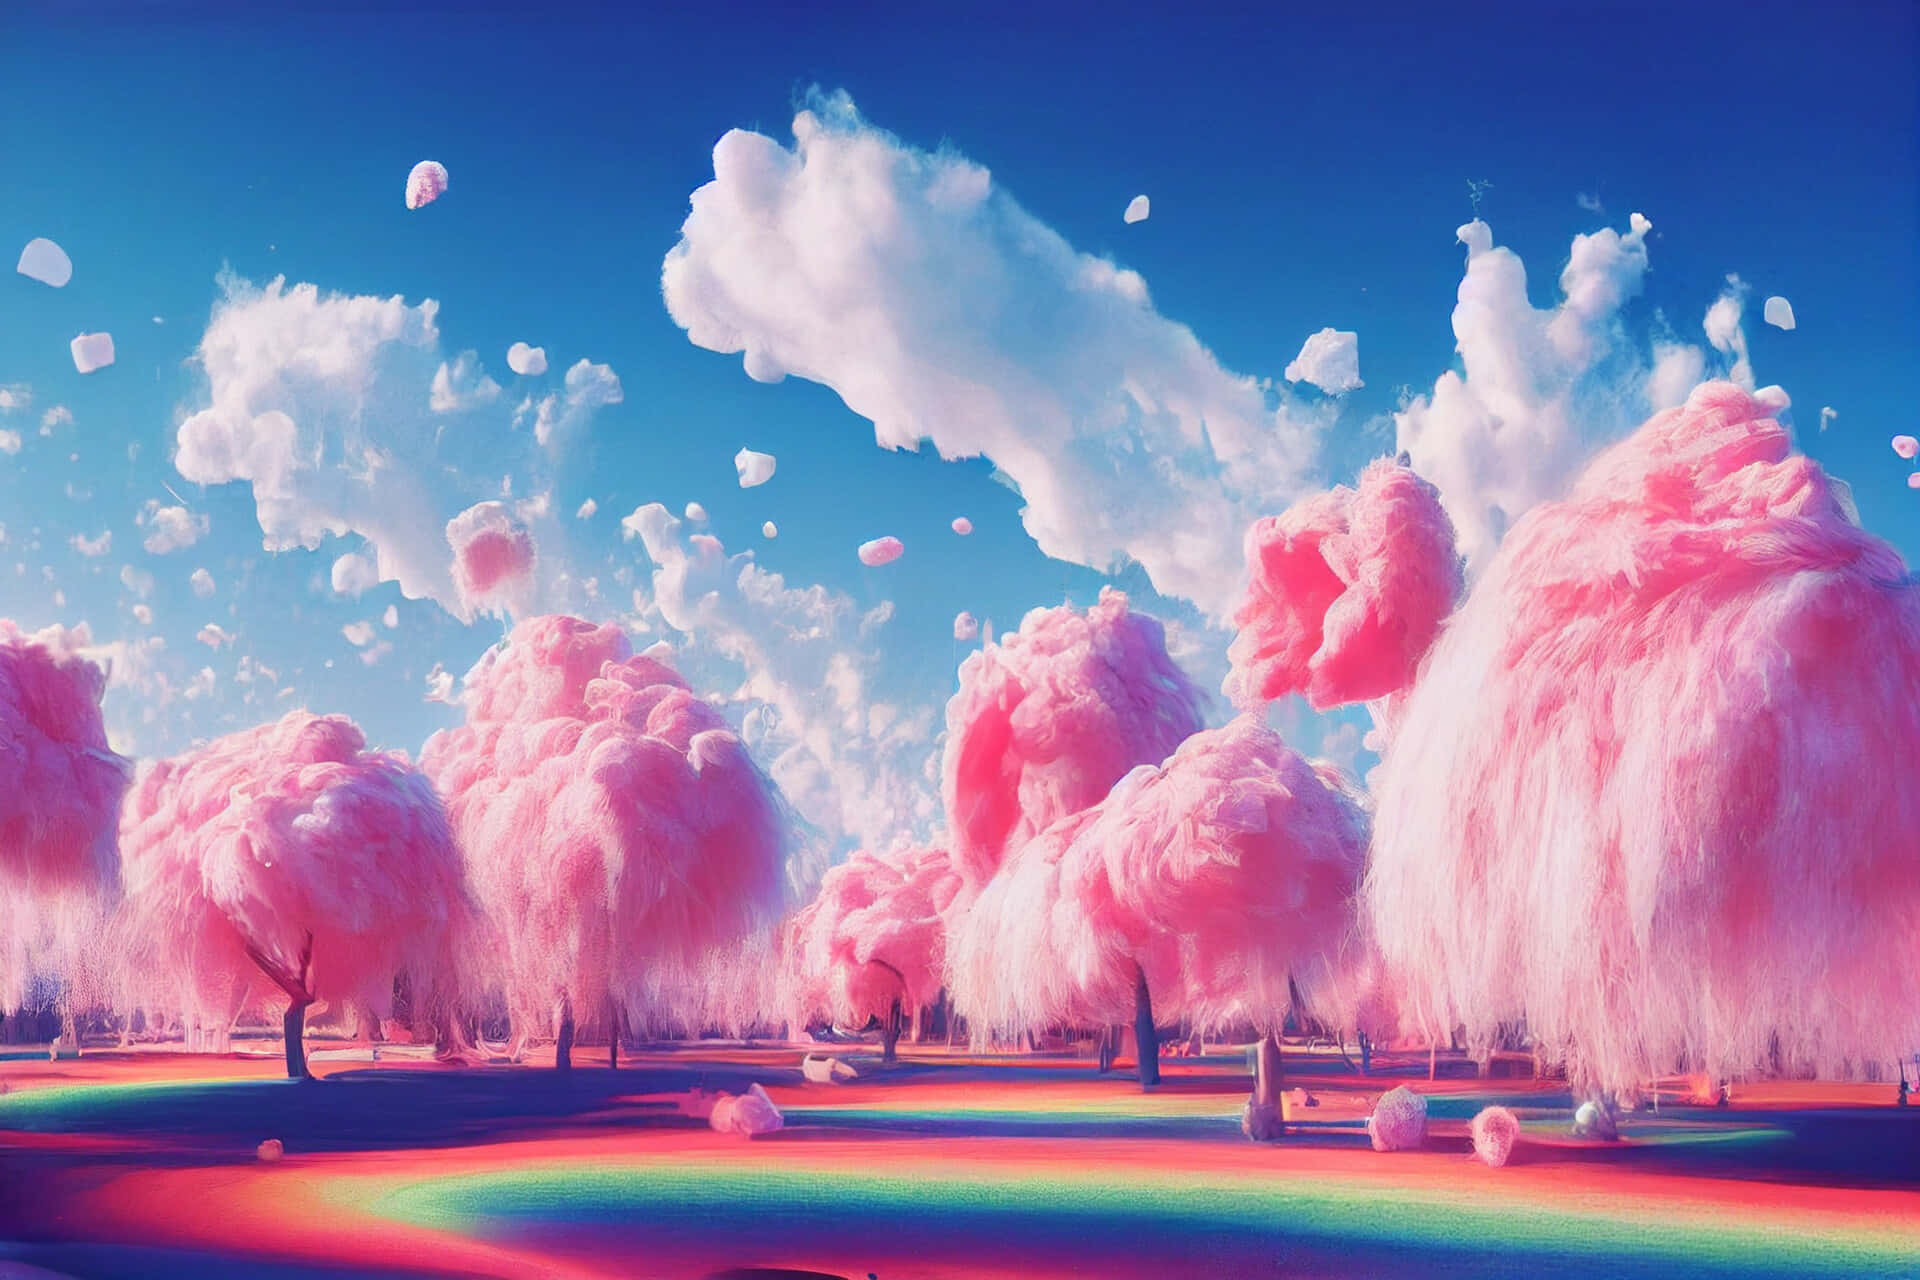 Tripy Æstetiske skyer på regnbue grund Wallpaper